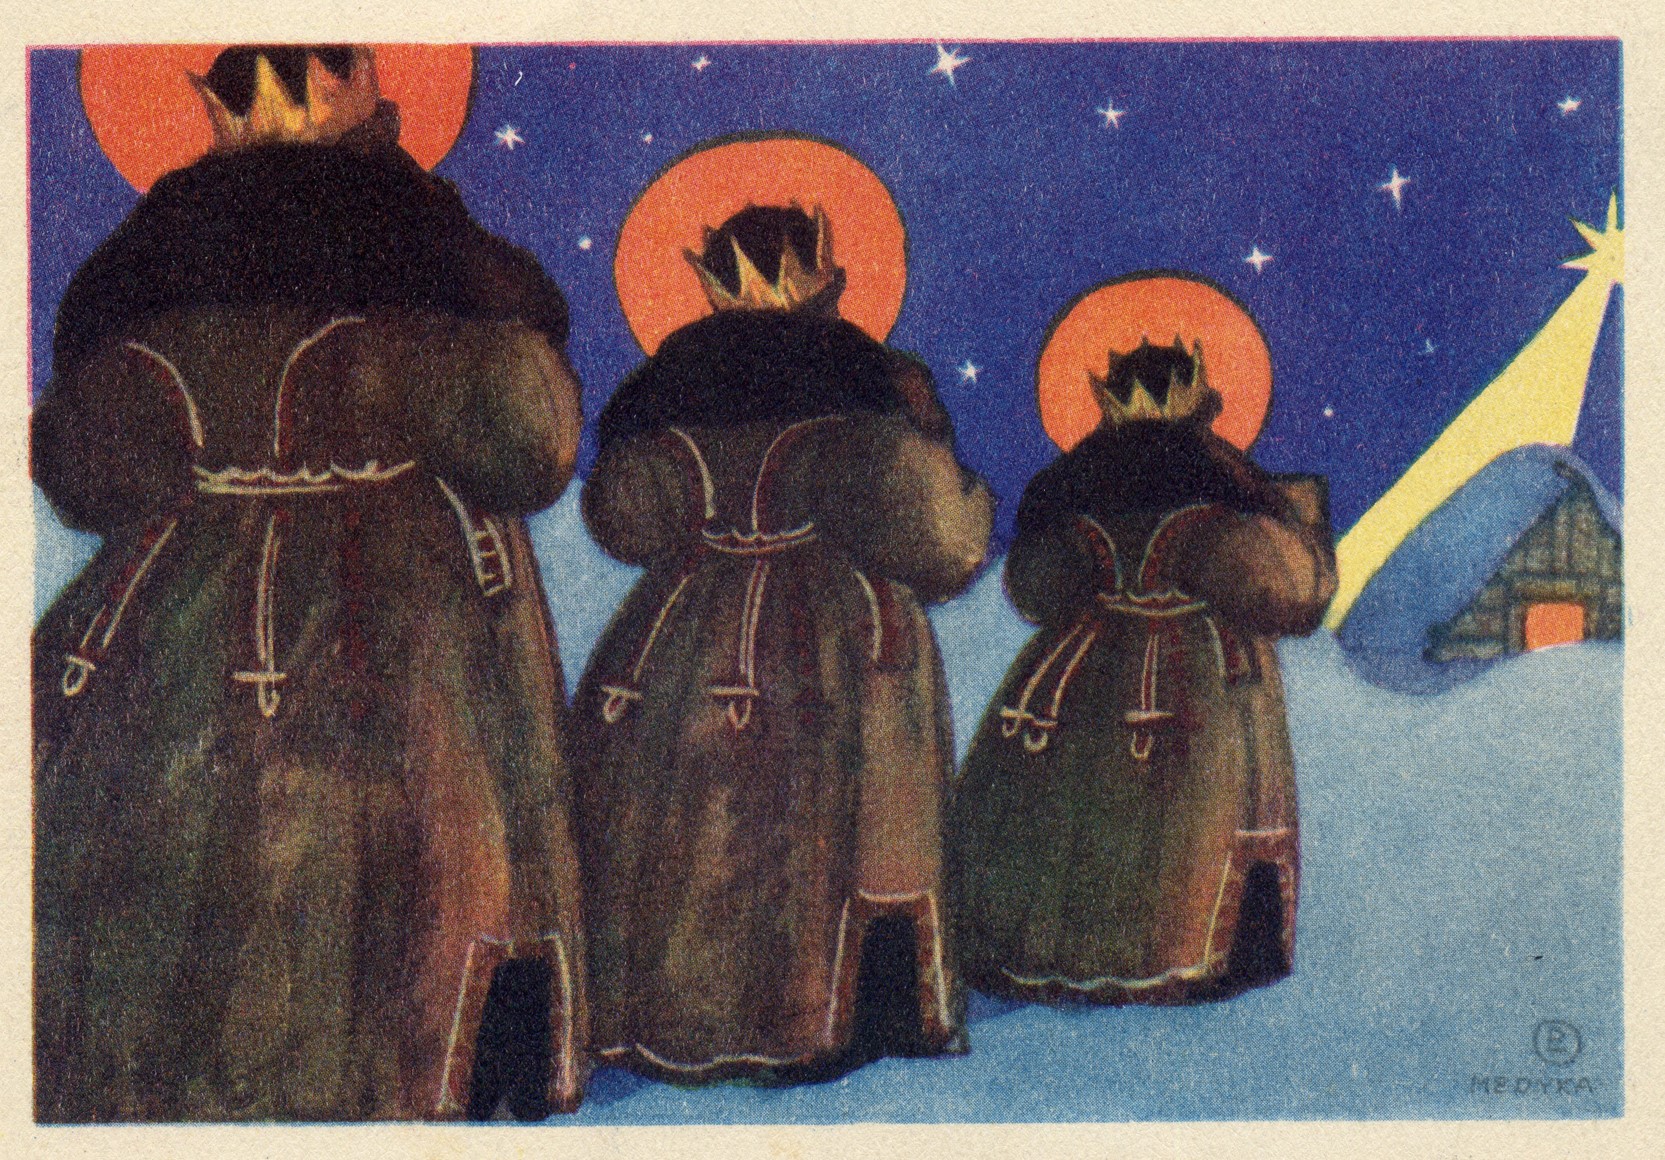 Kartki pocztowe na Boże Narodzenie autorstwa Leli Pawlikowskiej